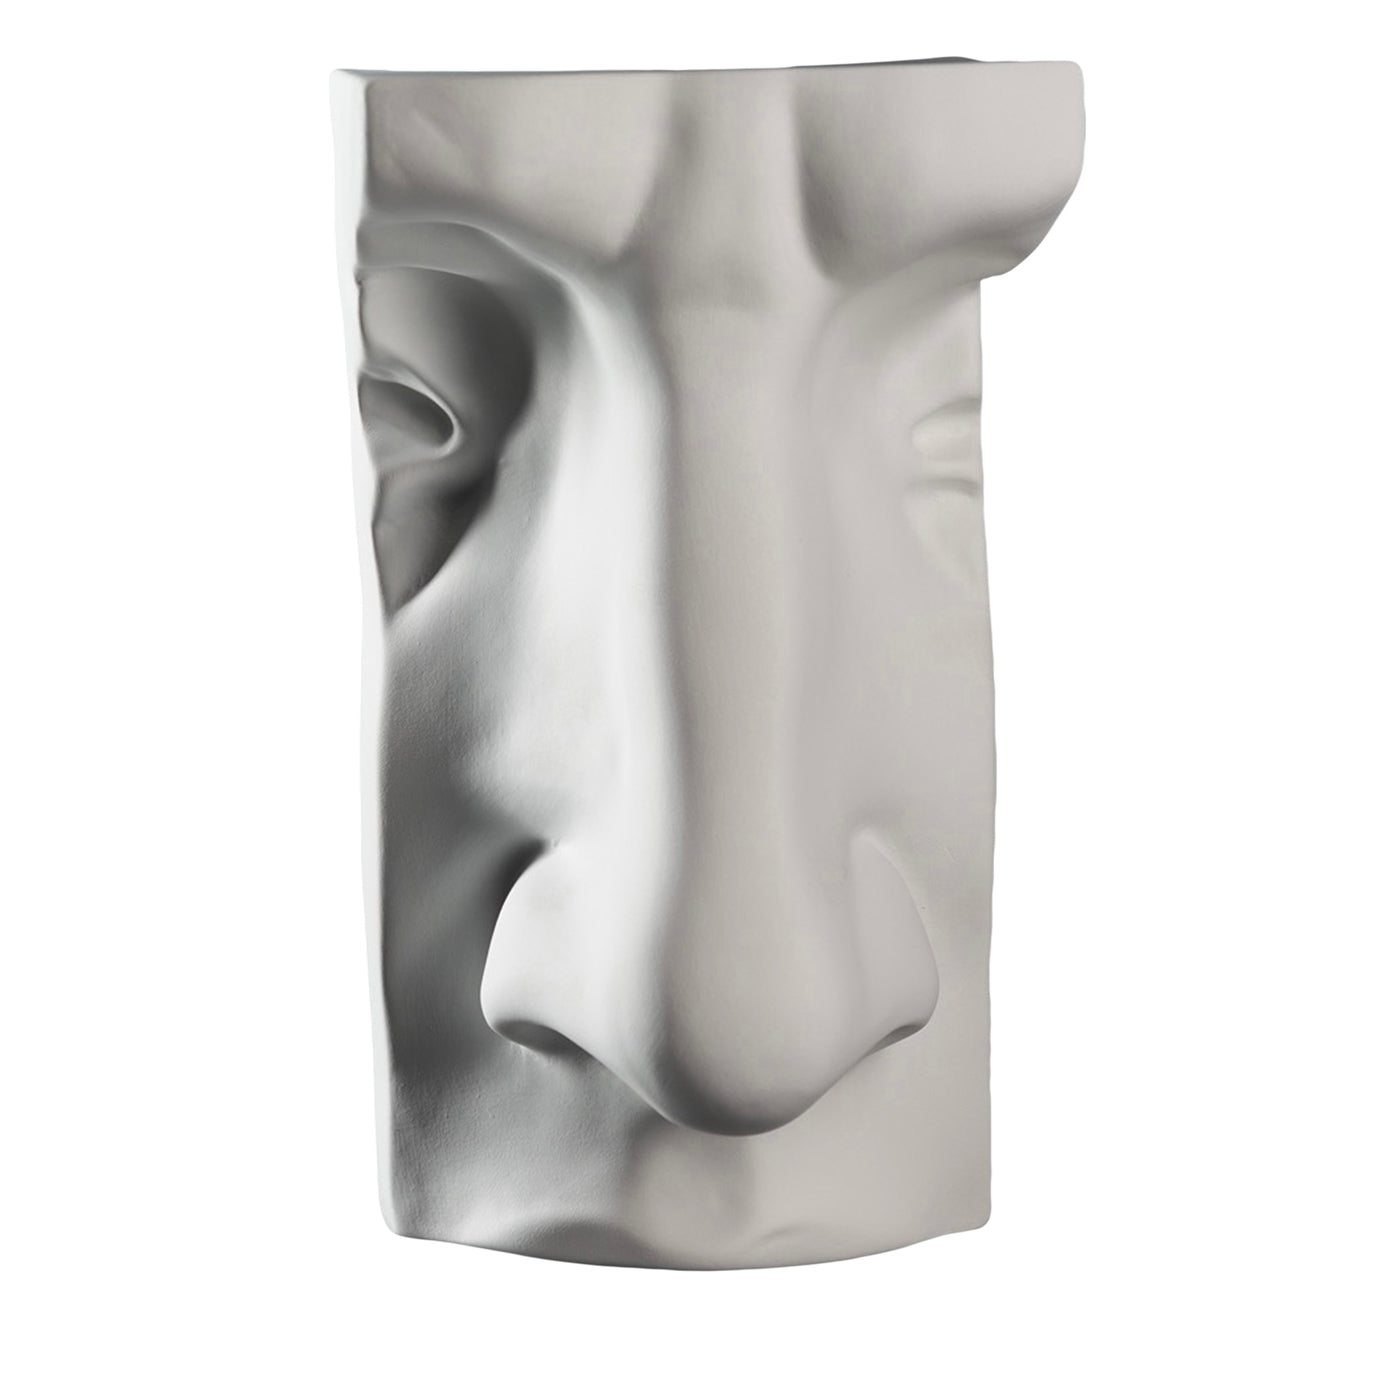 David's Nose Weiße Skulptur - Hauptansicht